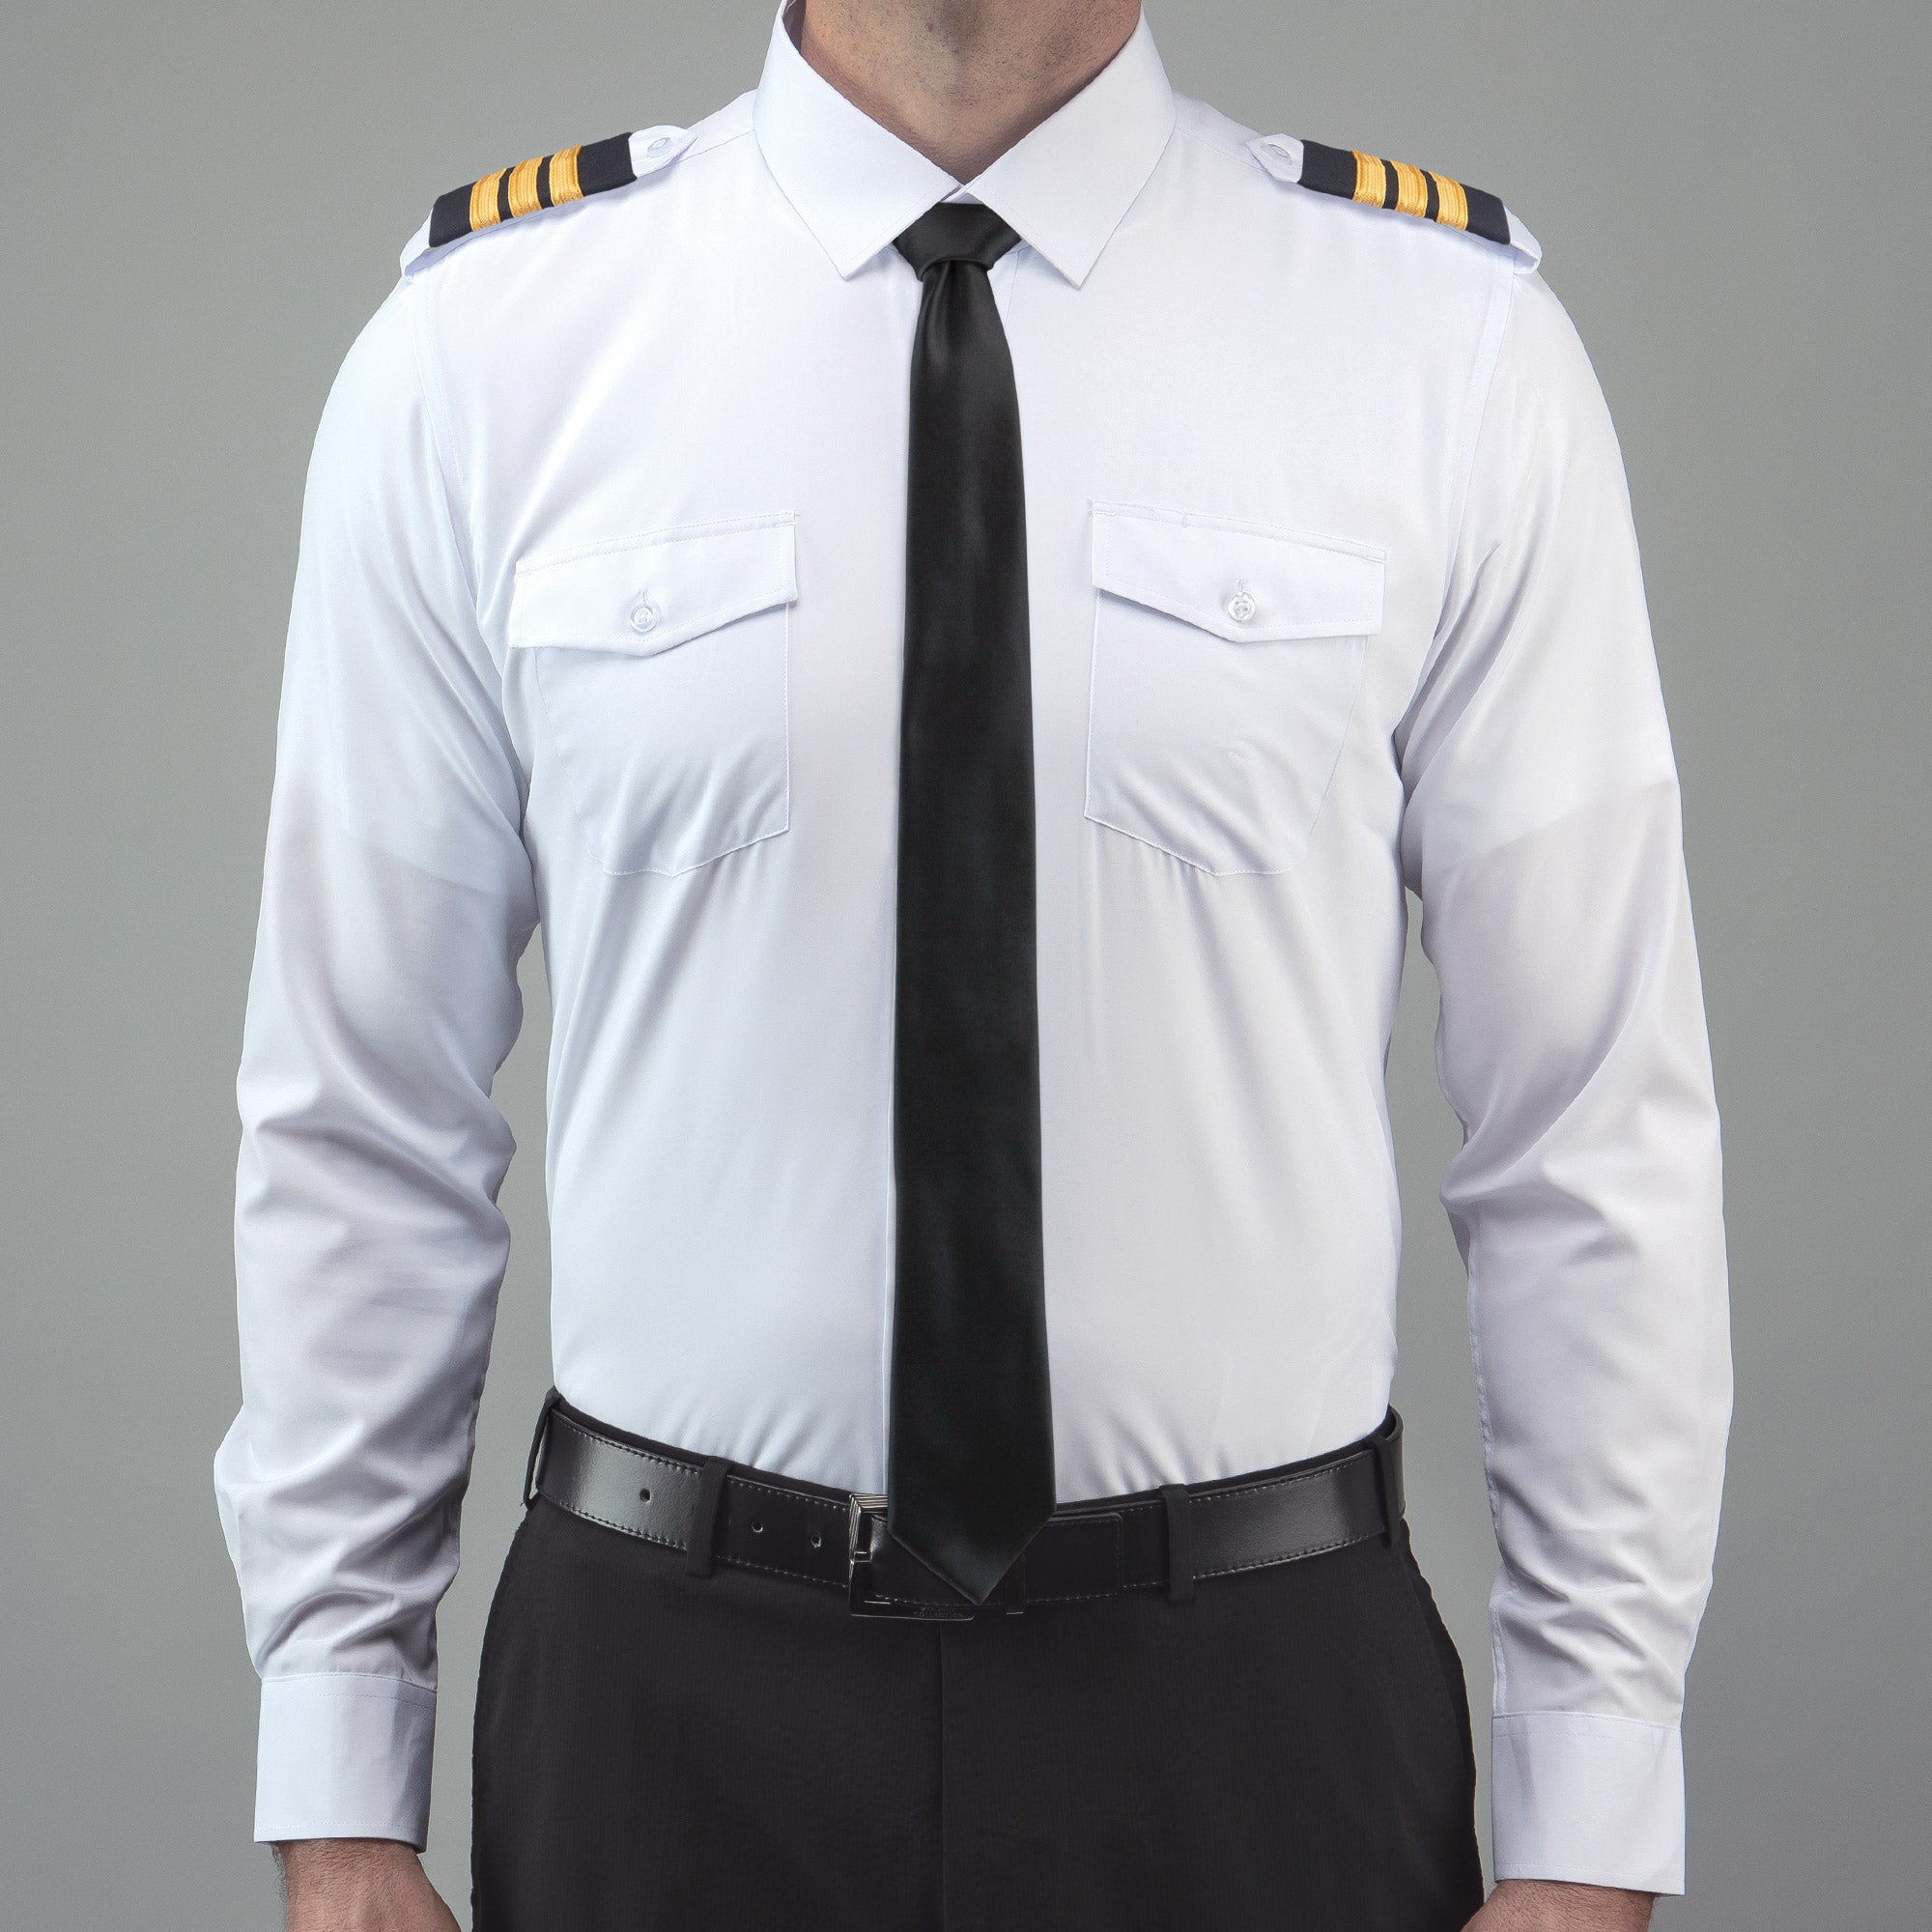 Flextech - Professional Pilot Shirt Long Sleeve Winged - LIFT Aviation